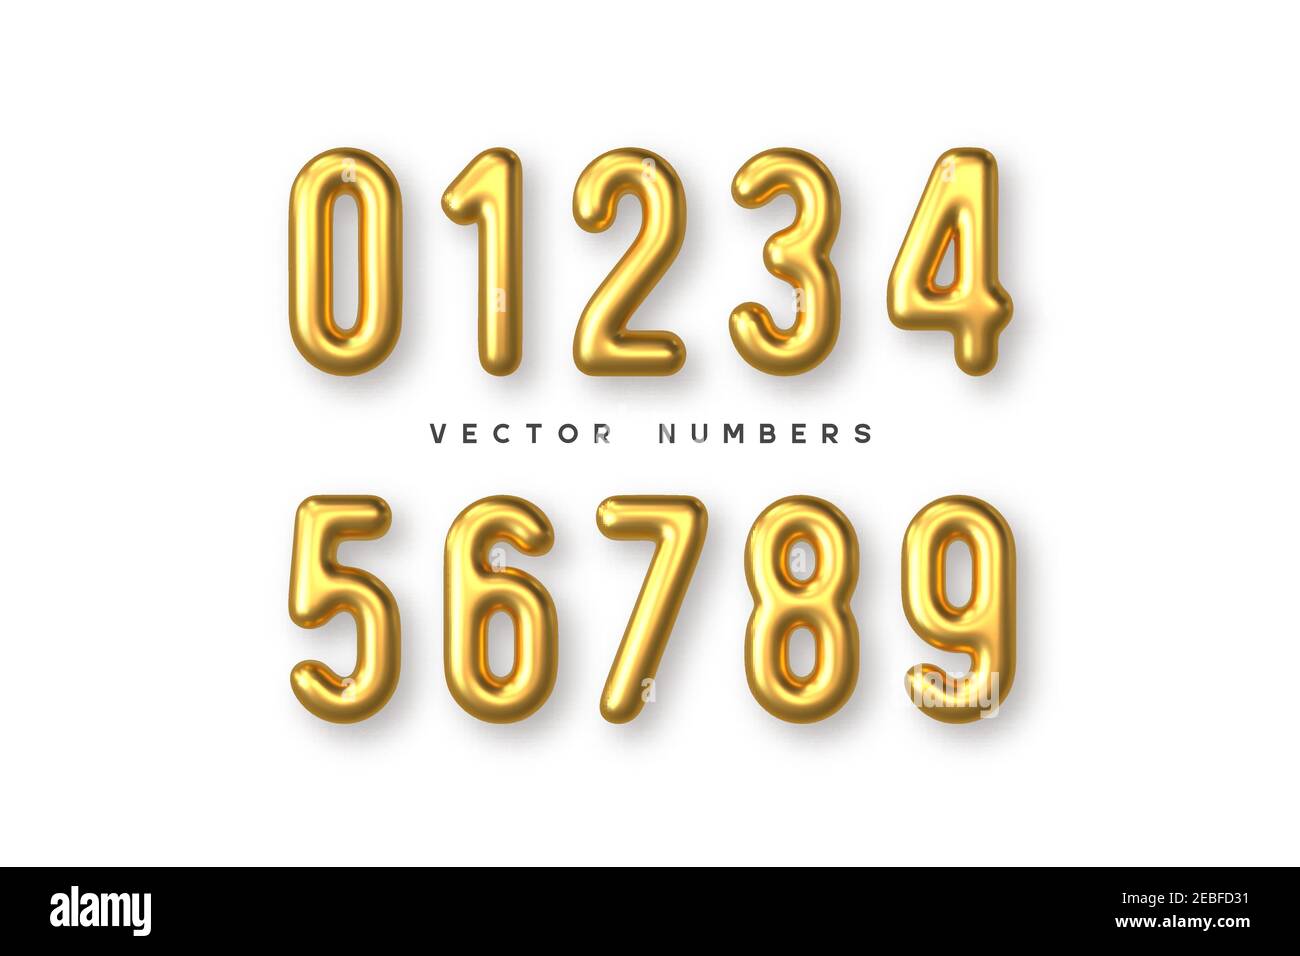 Golden numbers vector set. Stock Vector